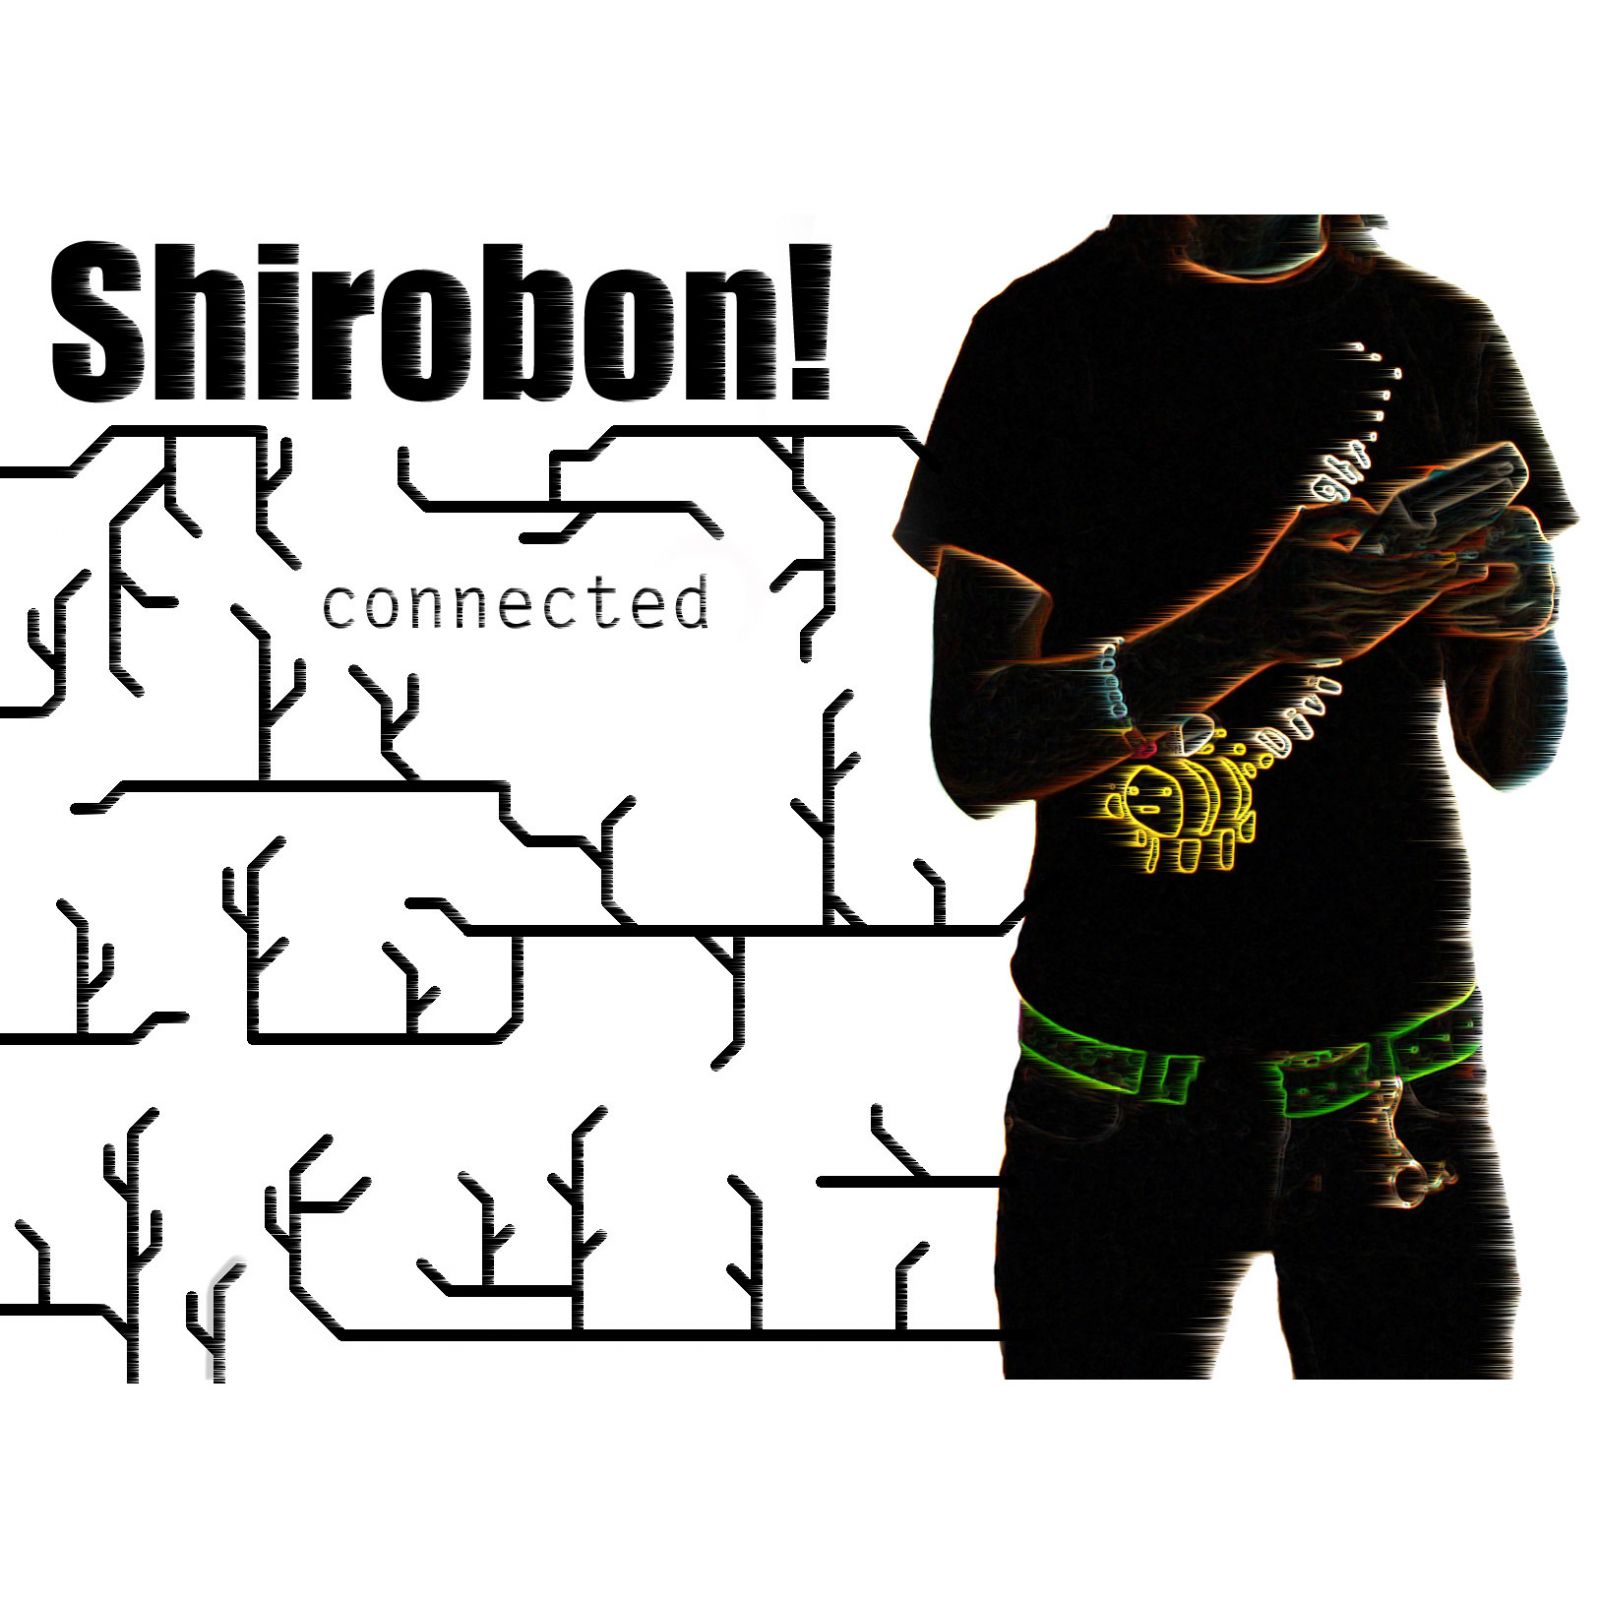 shirobon - connected